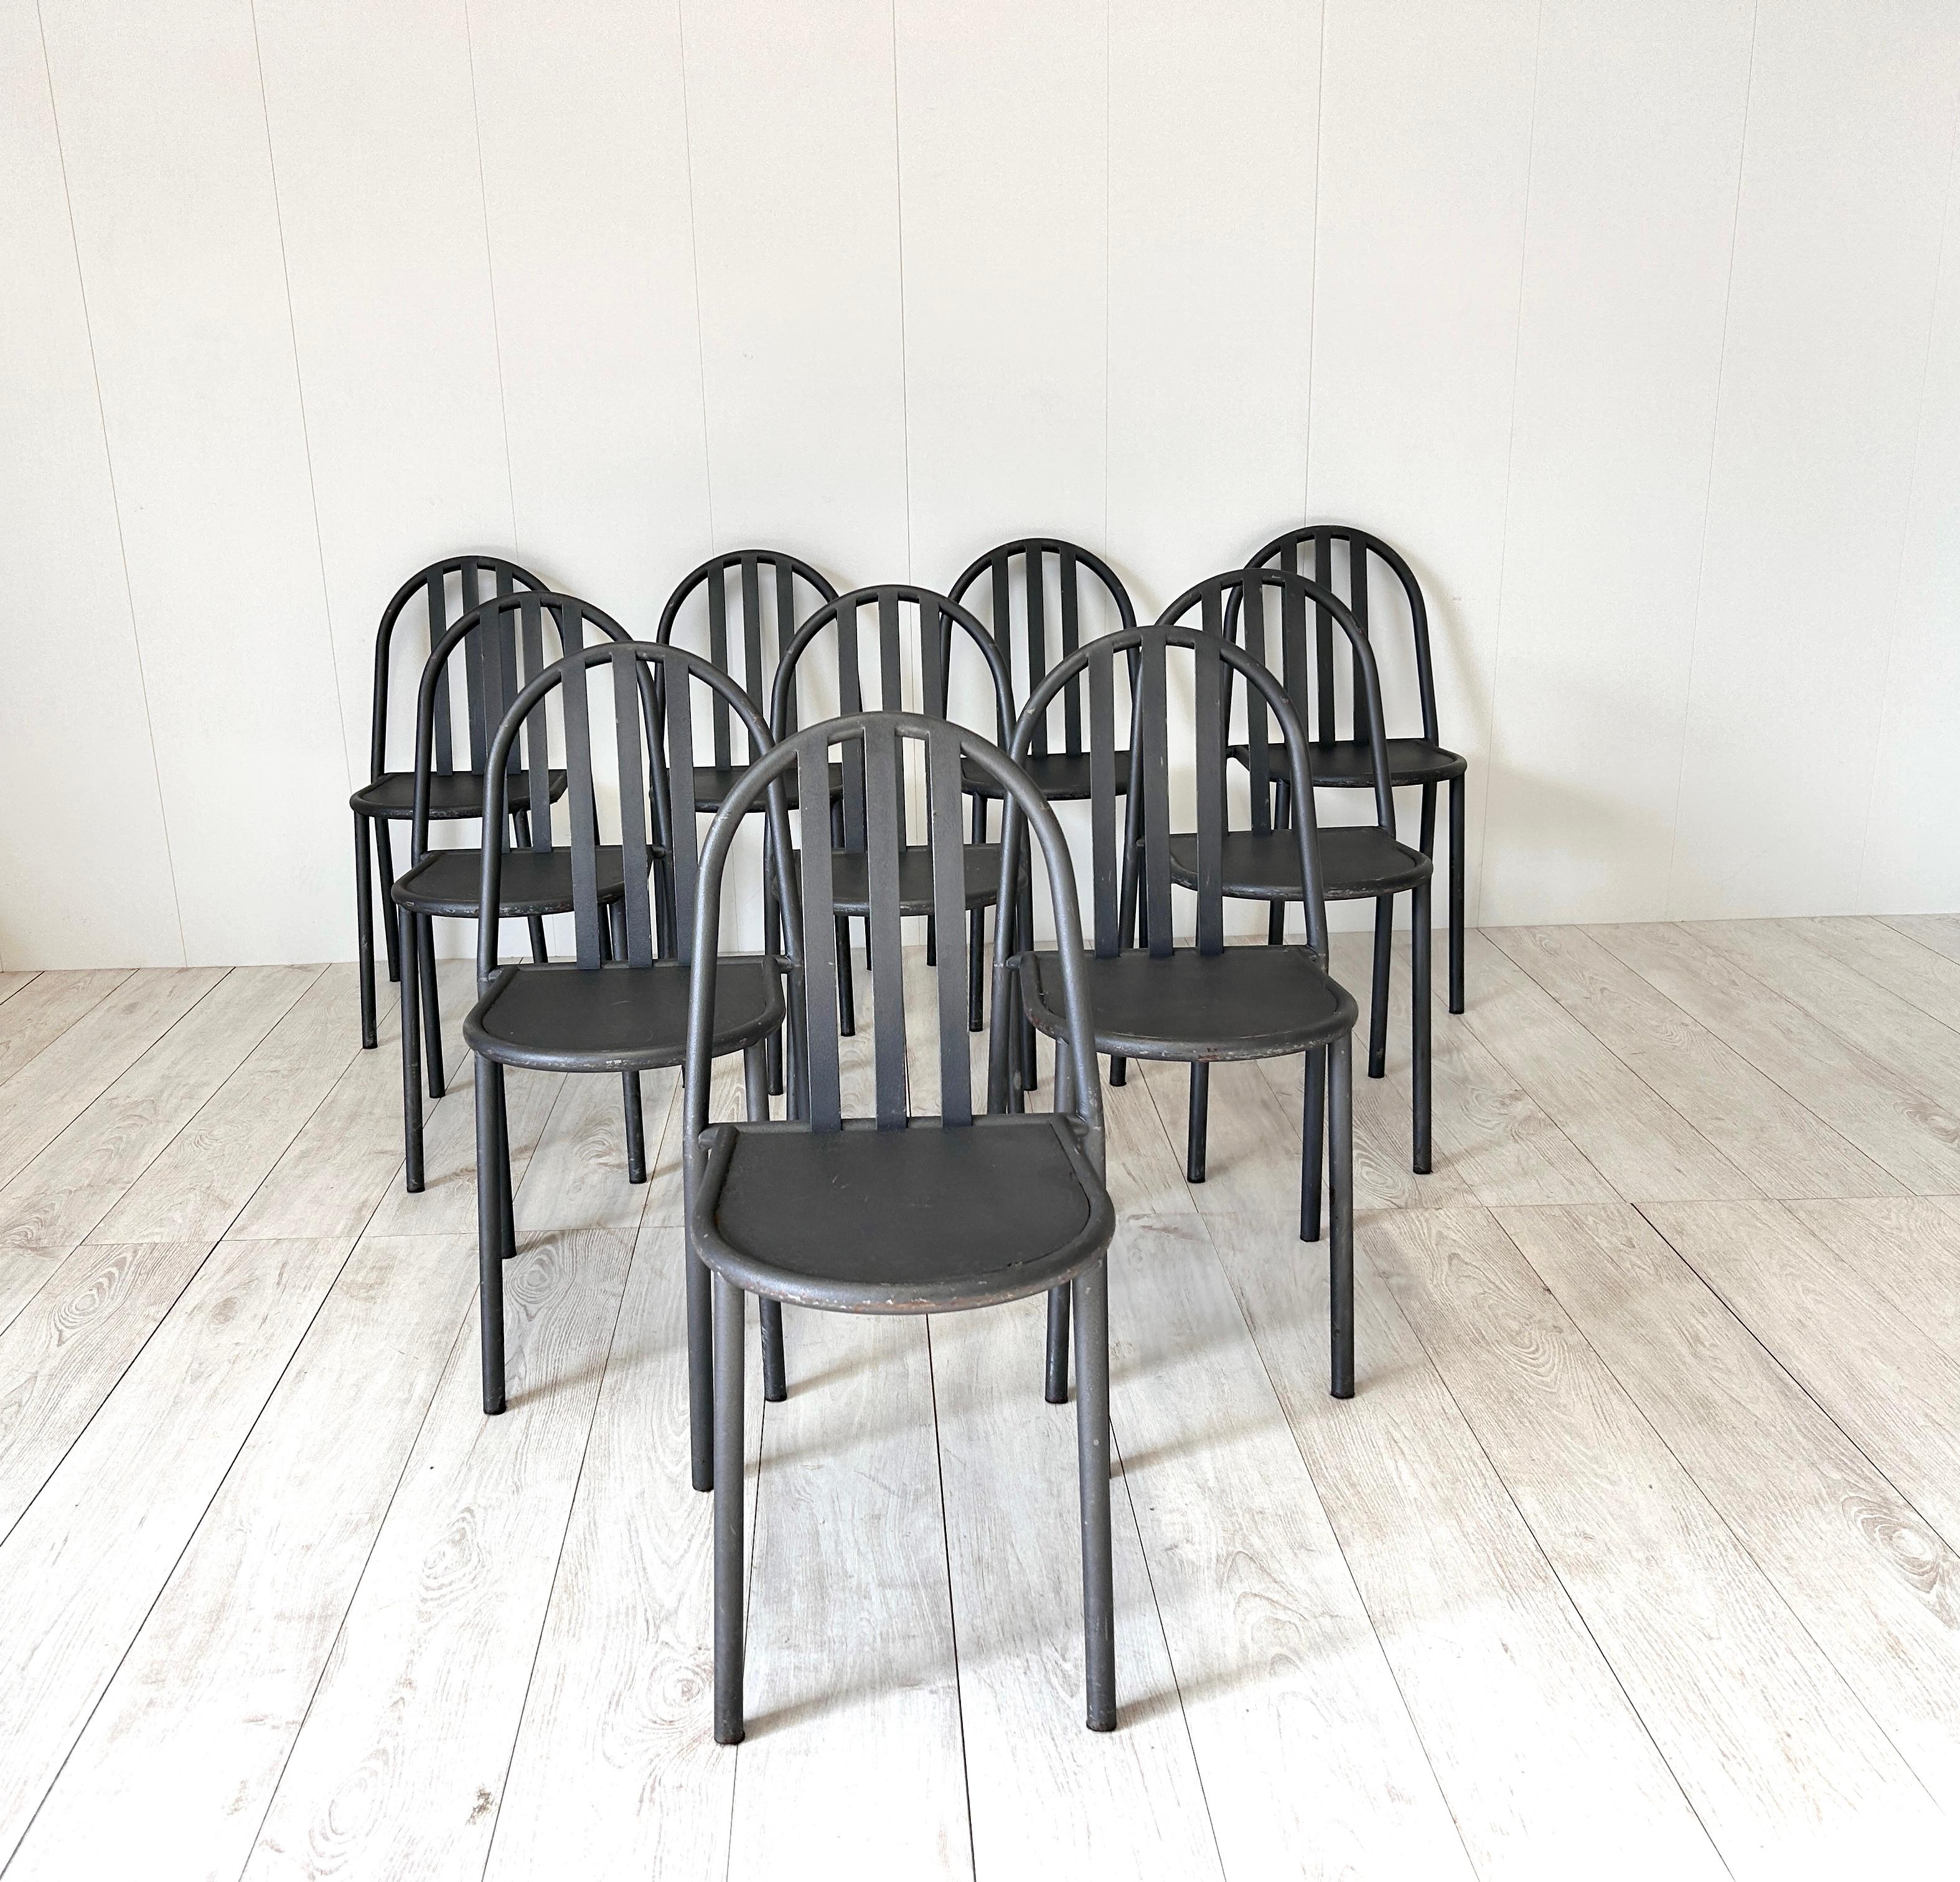 Set di 10 sedie color grigio scuro in ferro disegnate da Robert Mallet-Steven
Idéale pour un environnement de style industriel ou pour une utilisation à l'extérieur, comme des sièges de jardin.

Bonnes conditions générales, petites traces d'usure.

